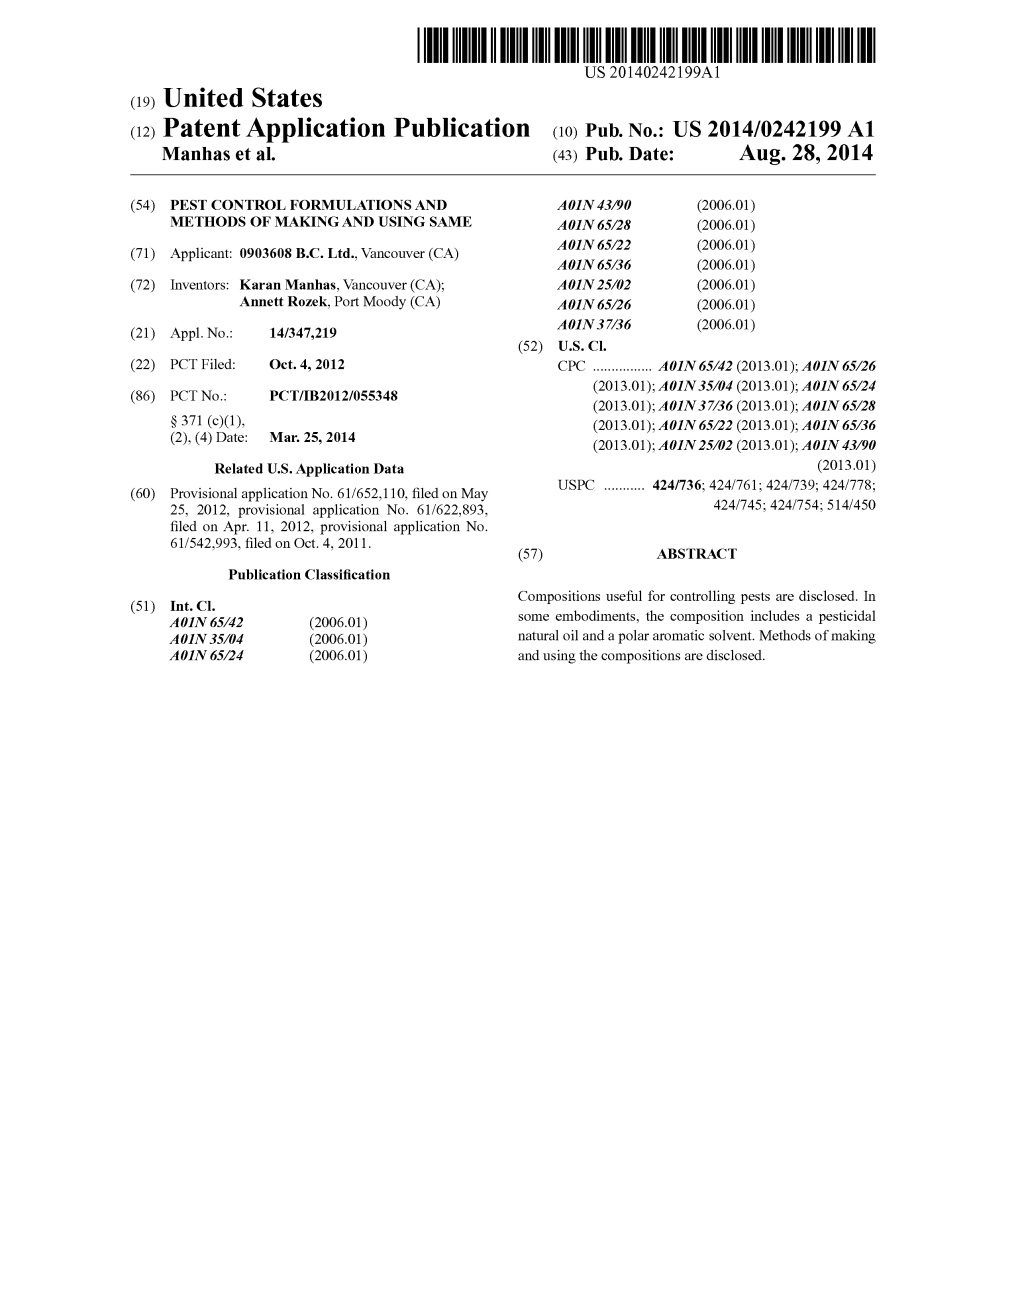 (12) Patent Application Publication (10) Pub. No.: US 2014/0242199 A1 Manhas Et Al